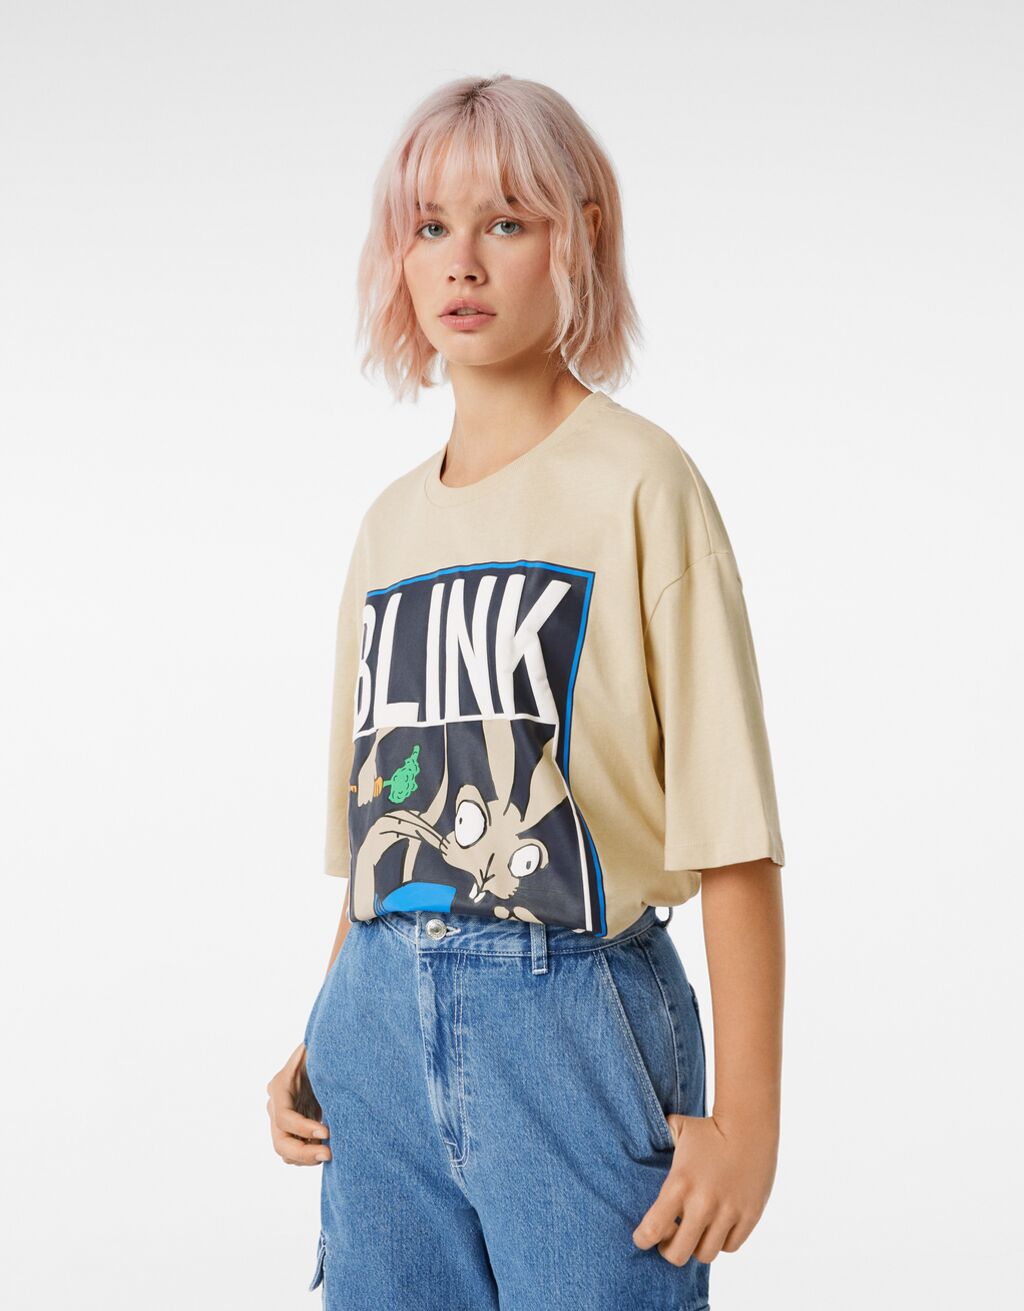 Oversize short sleeve T-shirt featuring Blink 182 print